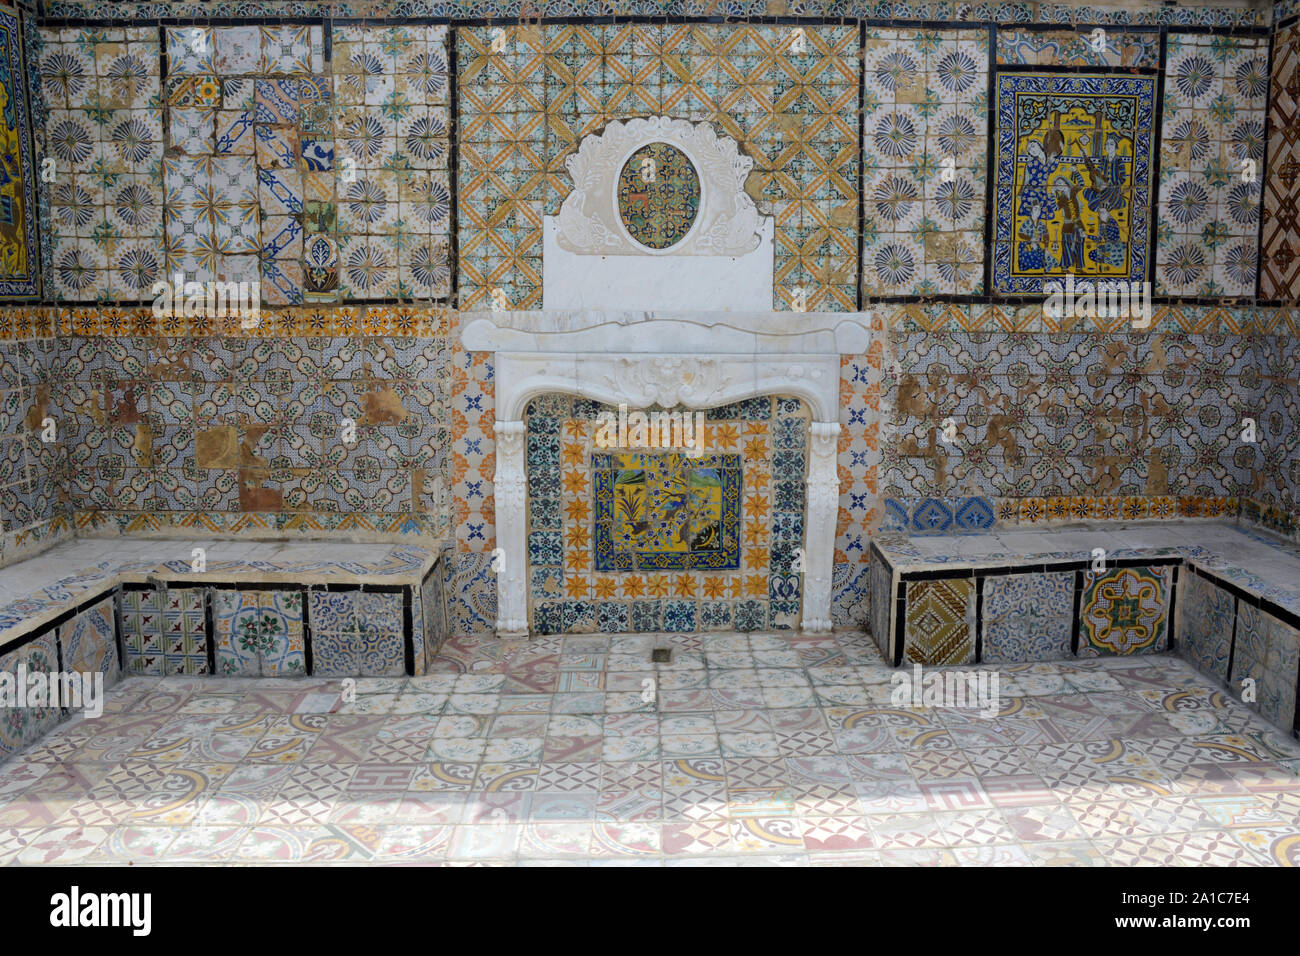 Il XVII secolo le piastrelle di ceramica contenente opere d'arte islamica sul tetto di un edificio nella medina (città vecchia) di Tunisi, Tunisia Foto Stock